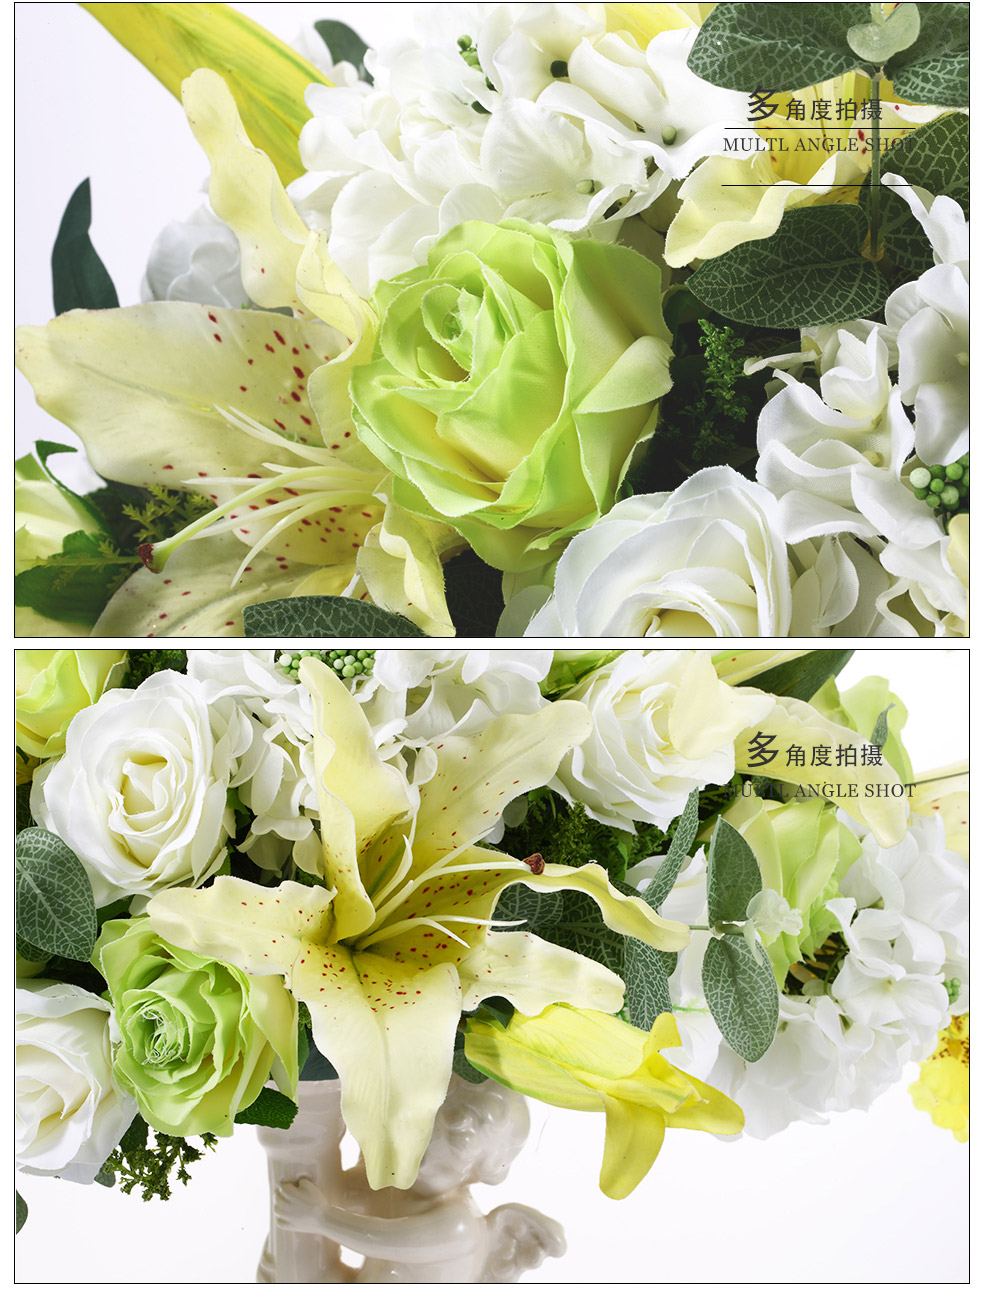 天使花瓶个性款淡雅玫瑰混式小盆仿真花XL-1010-0043